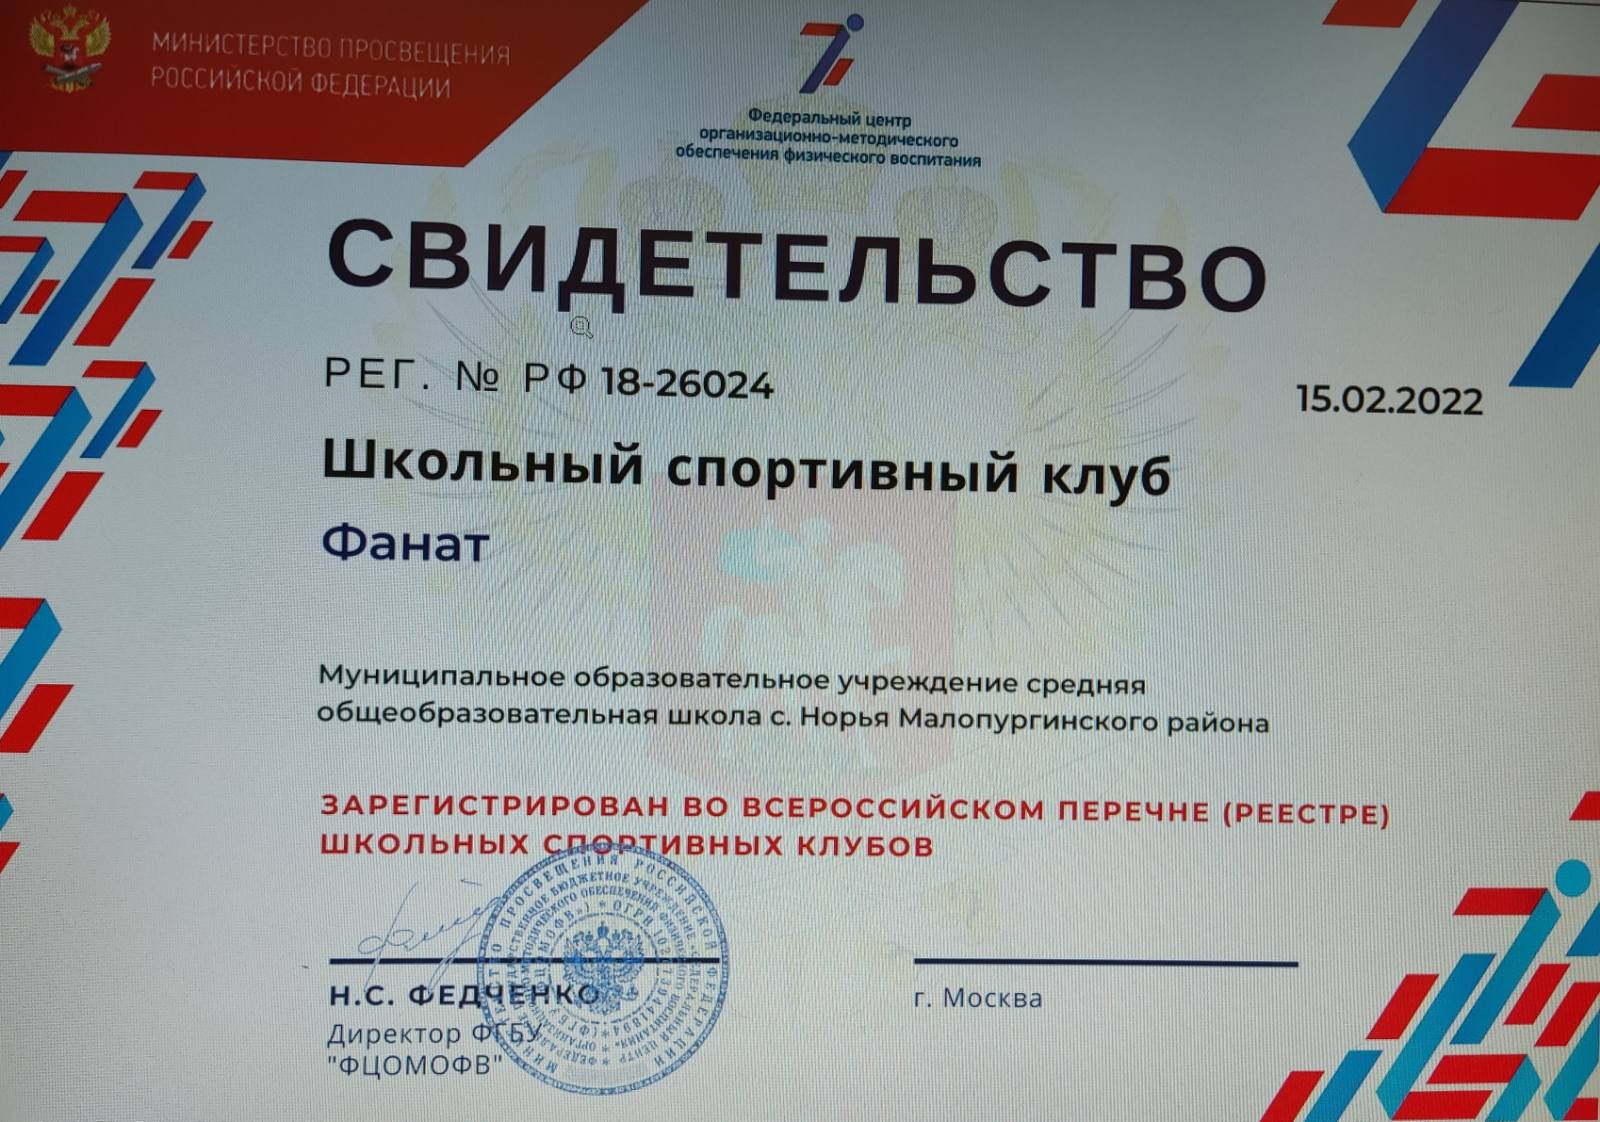 Свидетельство о регистрации во всероссийском перечне (реестре) школьных спортивных клубов